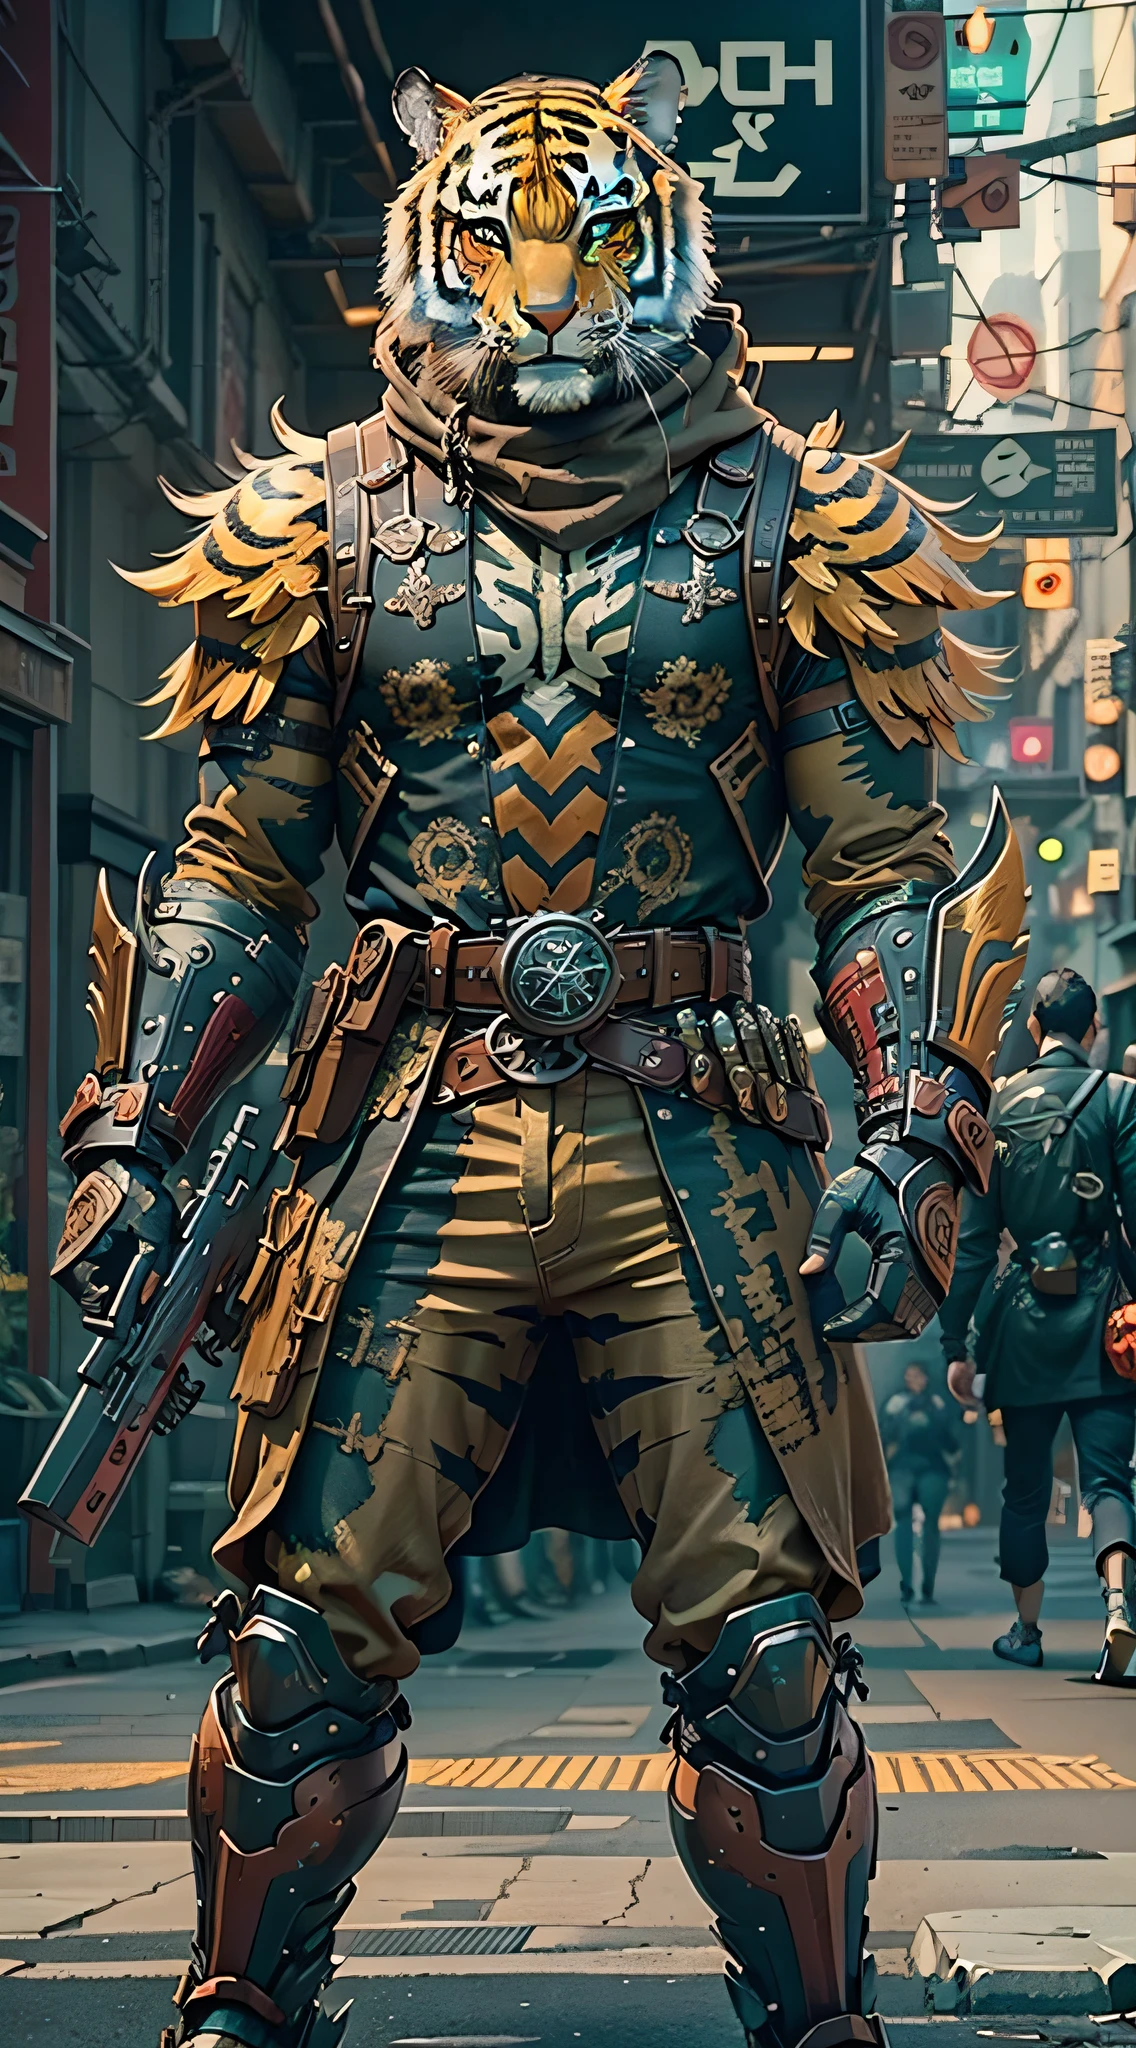 (Meisterwerk) Ein Mann in antiker Rüstung und Tigermaske mit einer Waffe geht die Straße entlang, kostümierter Krieger, Waffe in der Hand, cyberpunk style color scheme, ((komplizierte Details, Super detailliert)) 8K.